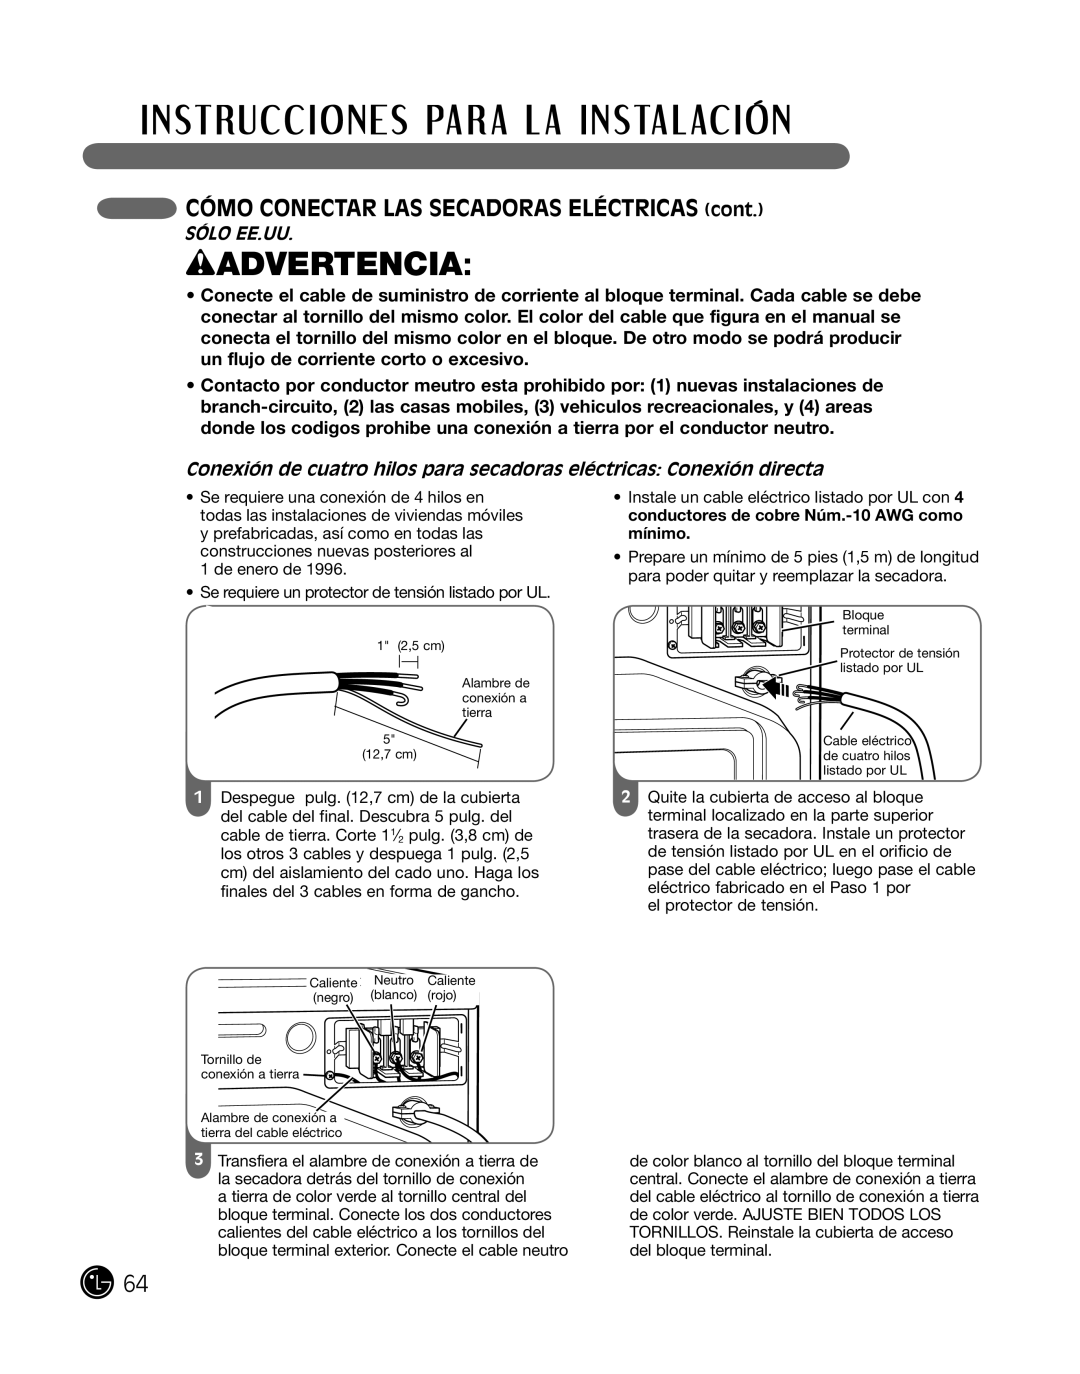 LG Electronics P154 manual cÓmo conecTar laS SecadoraS elÉcTricaS cont, SÓlo ee.uu, wADVERTENCIA 